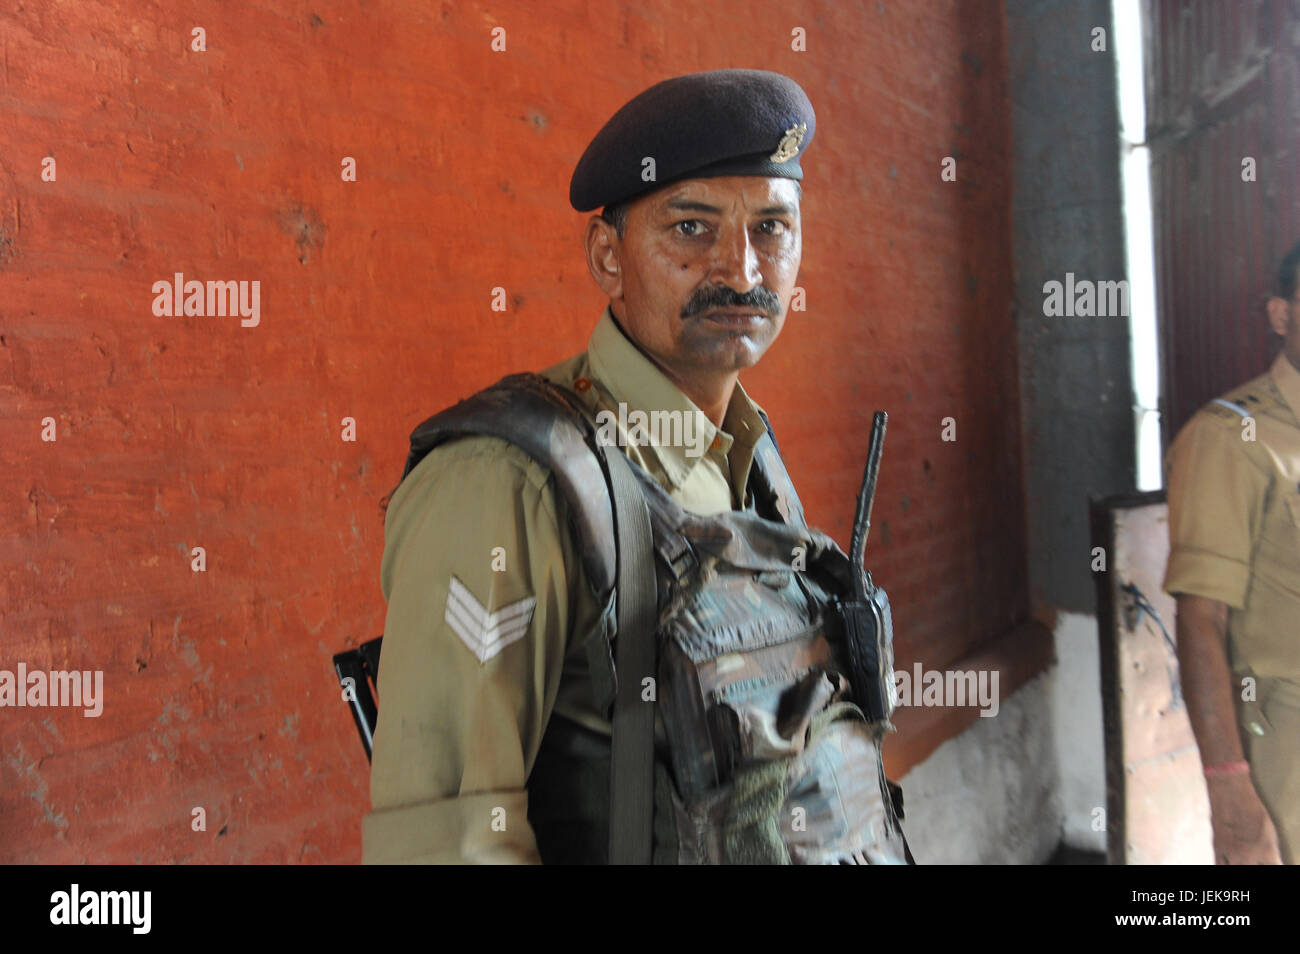 L'agent de police dans le bâtiment, à Srinagar, Jammu Cachemire, l'Inde, l'Asie Banque D'Images